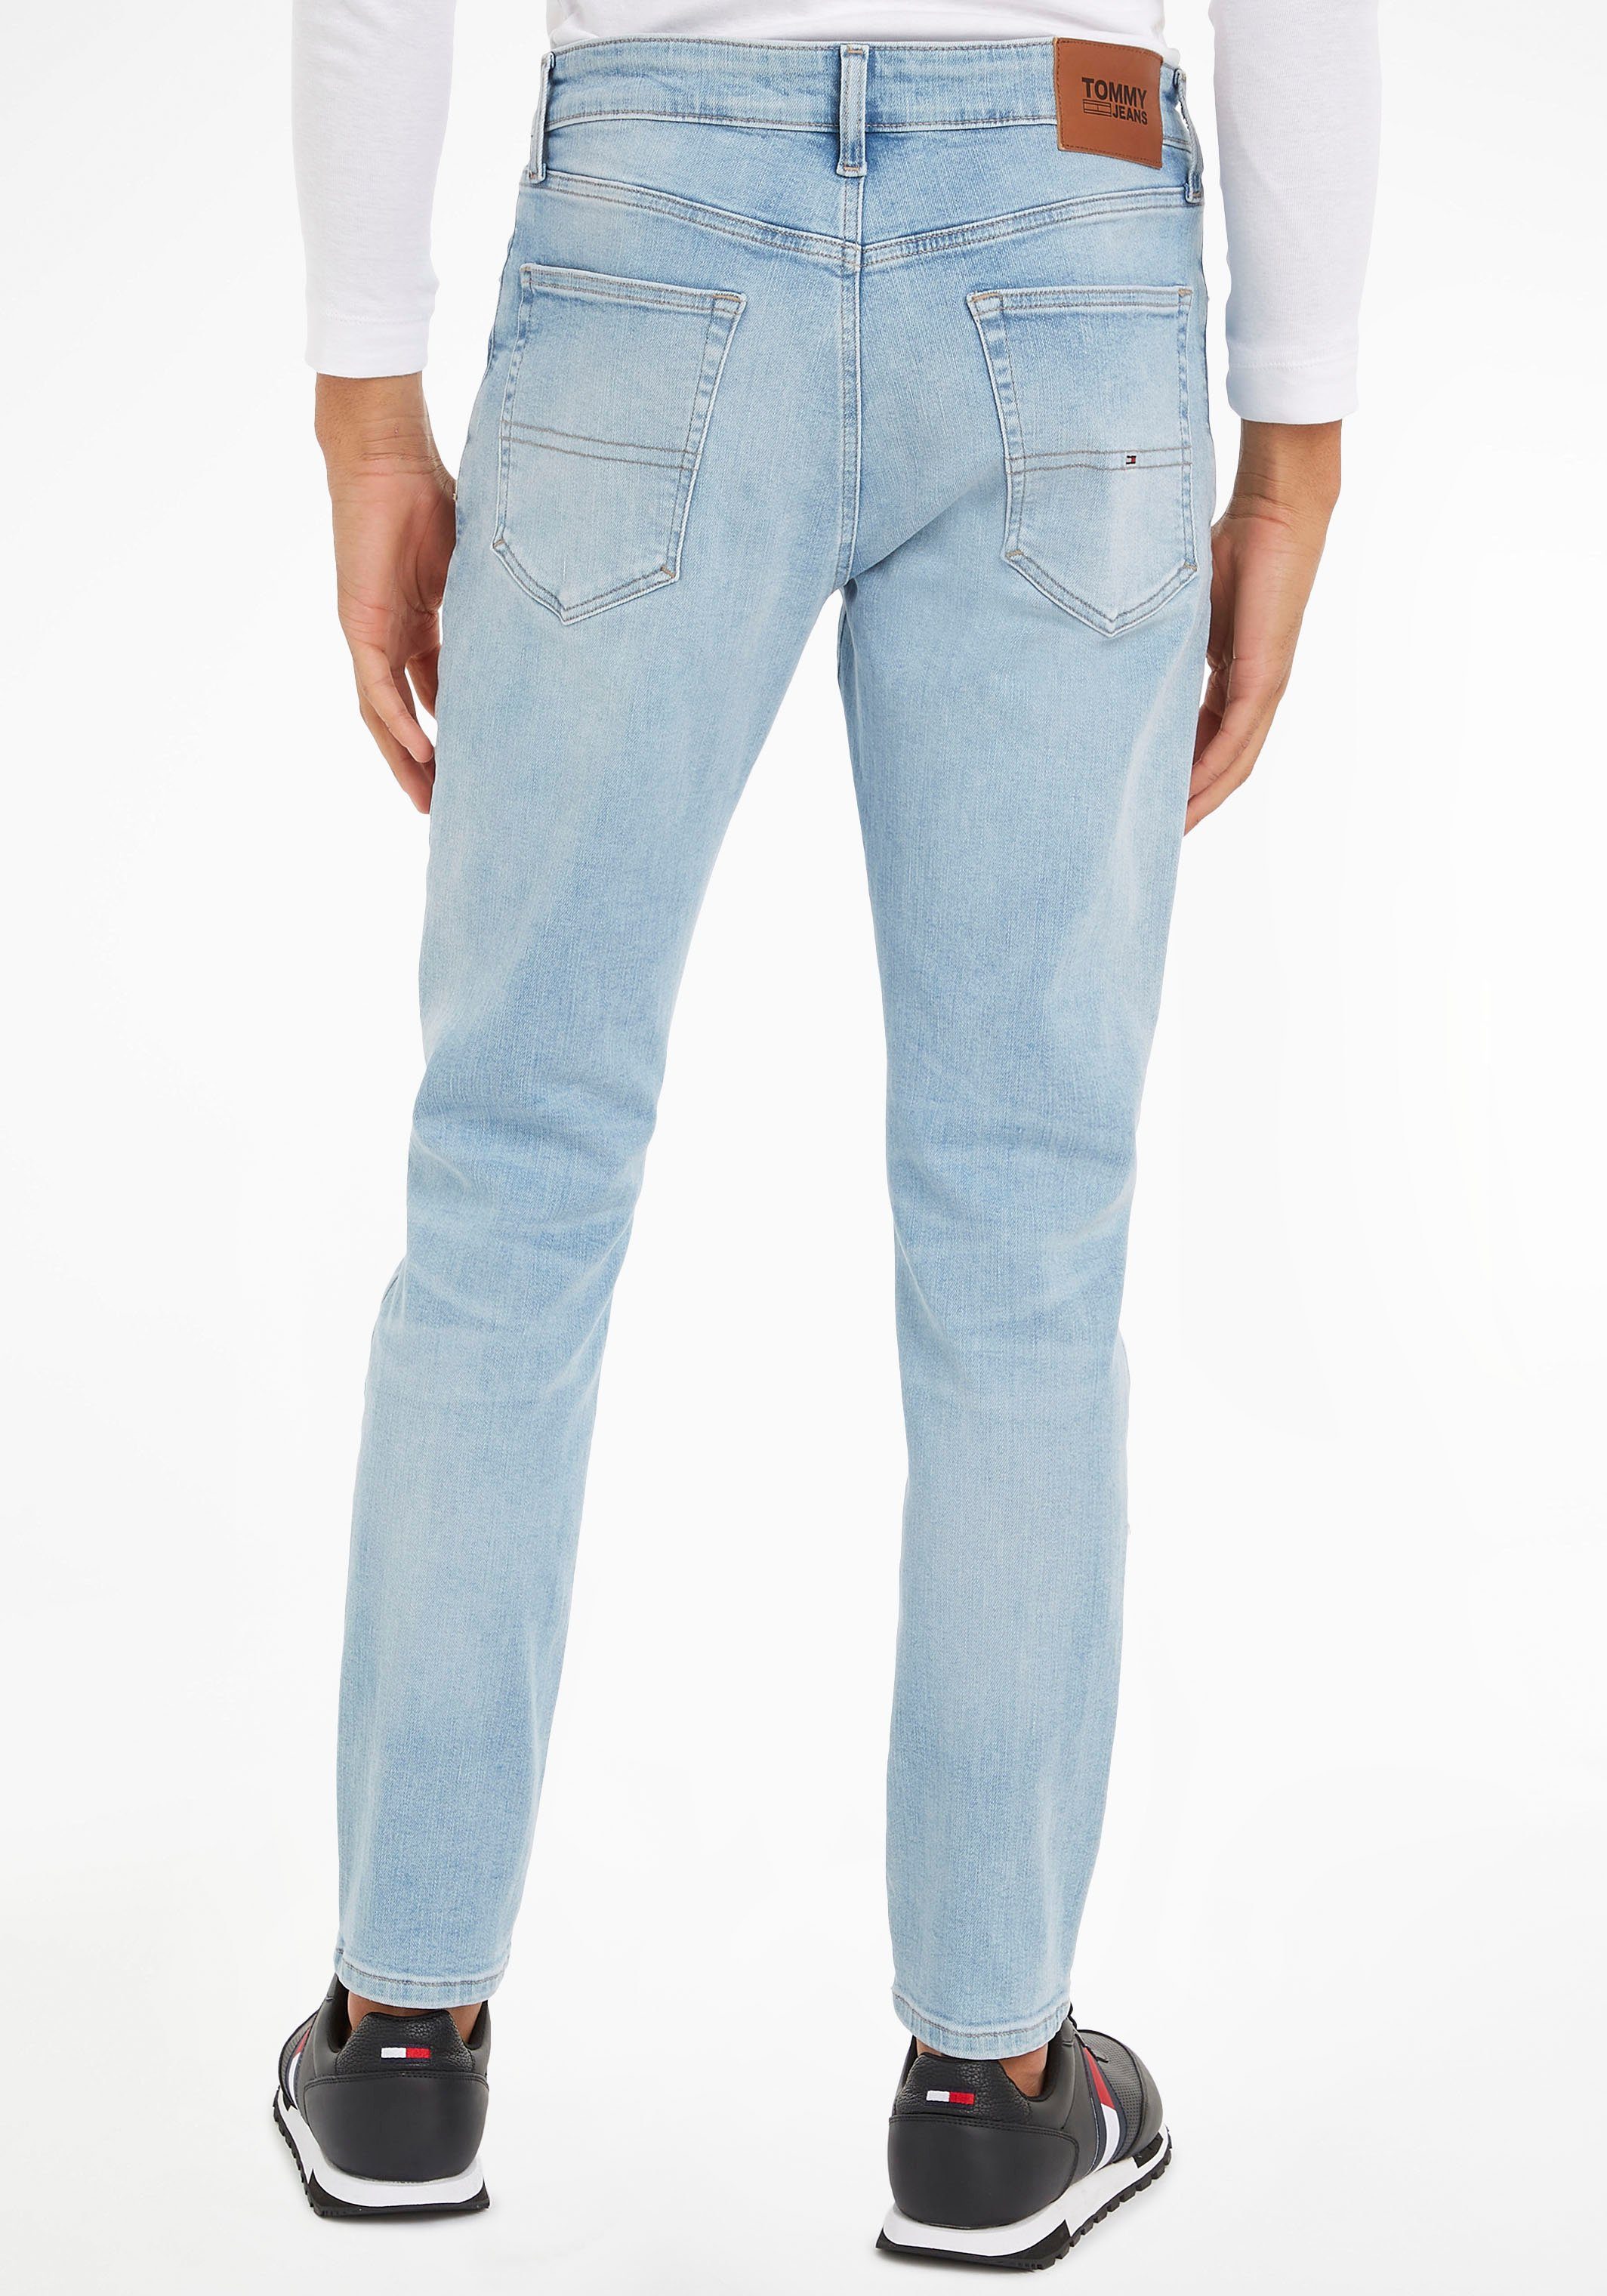 Slim-fit-Jeans Jeans AUSTIN denim TPRD SLIM Lederbadge light mit Tommy